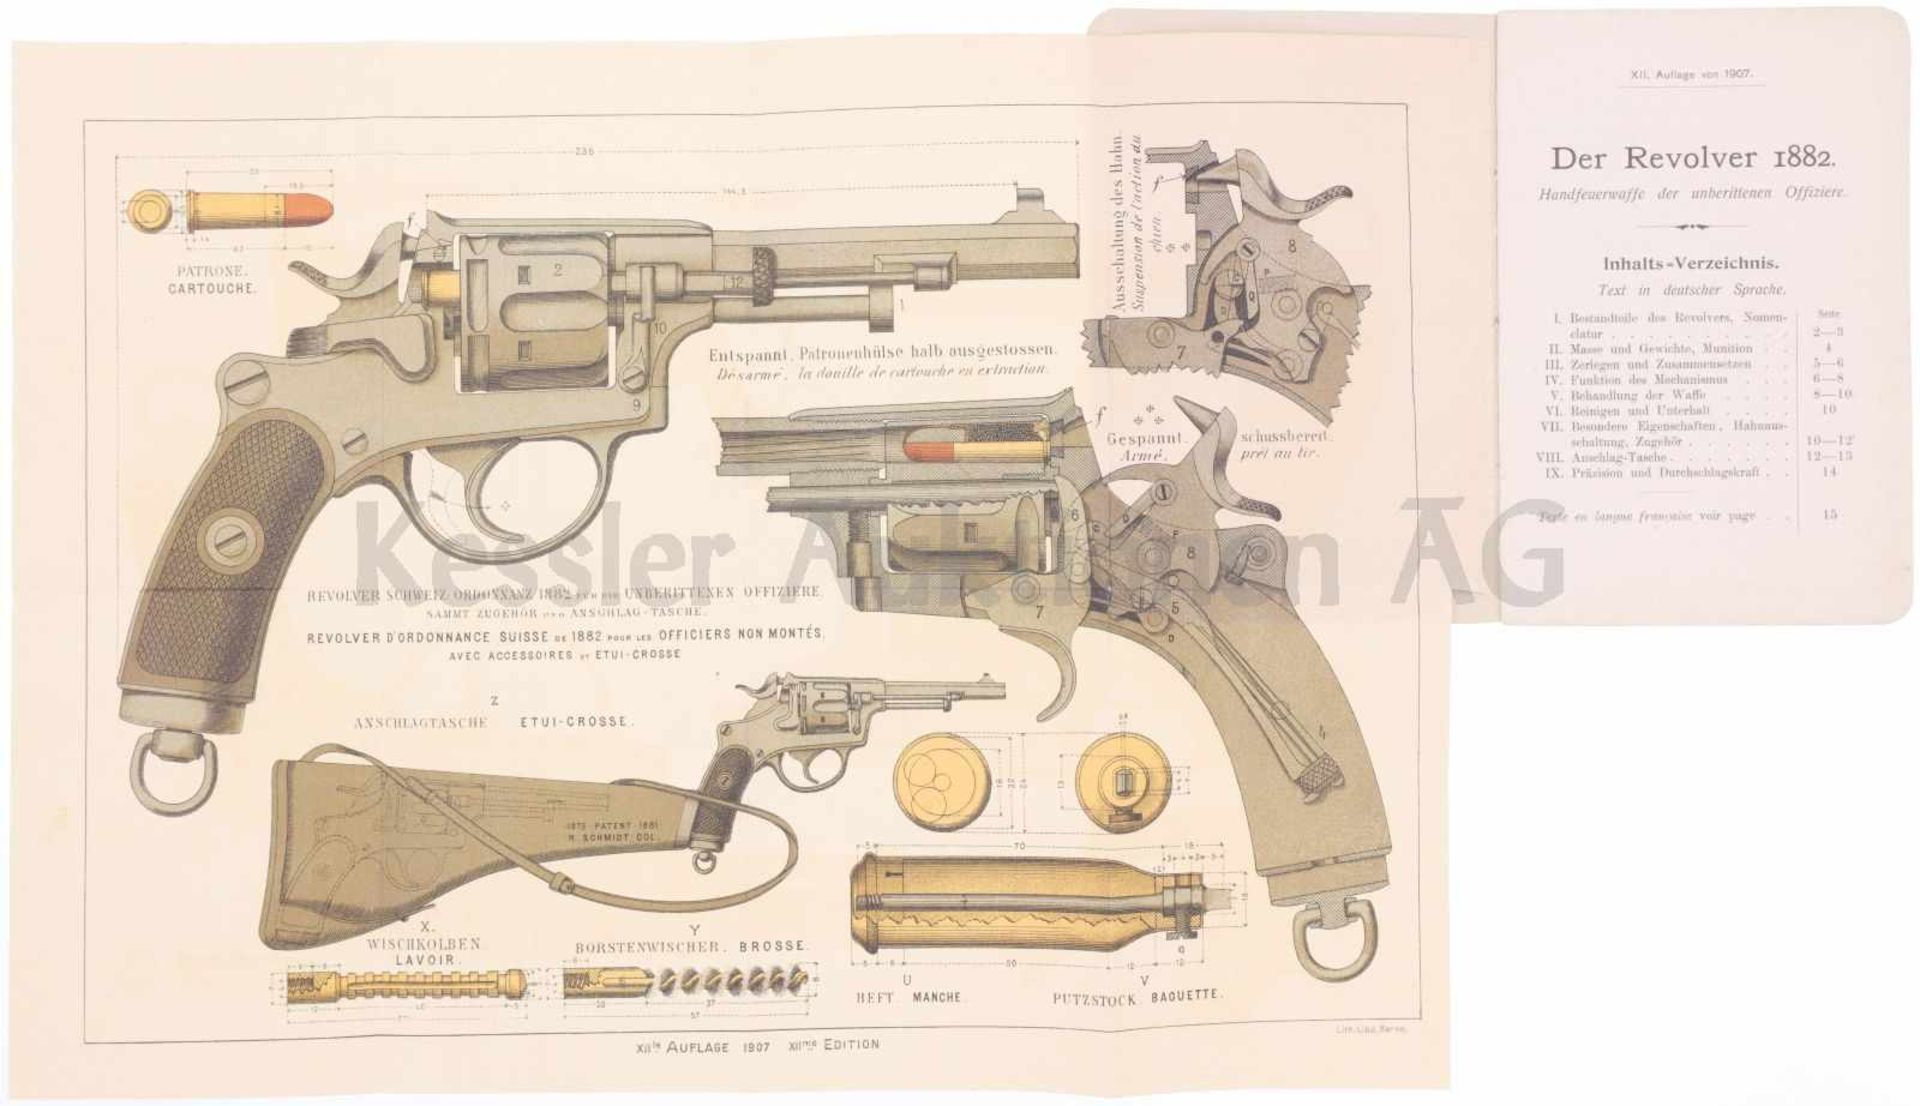 Reglement zum Revolver 1882 XII. Auflage von 1907, 28 Seiten, in deutsch und französisch. Auf der